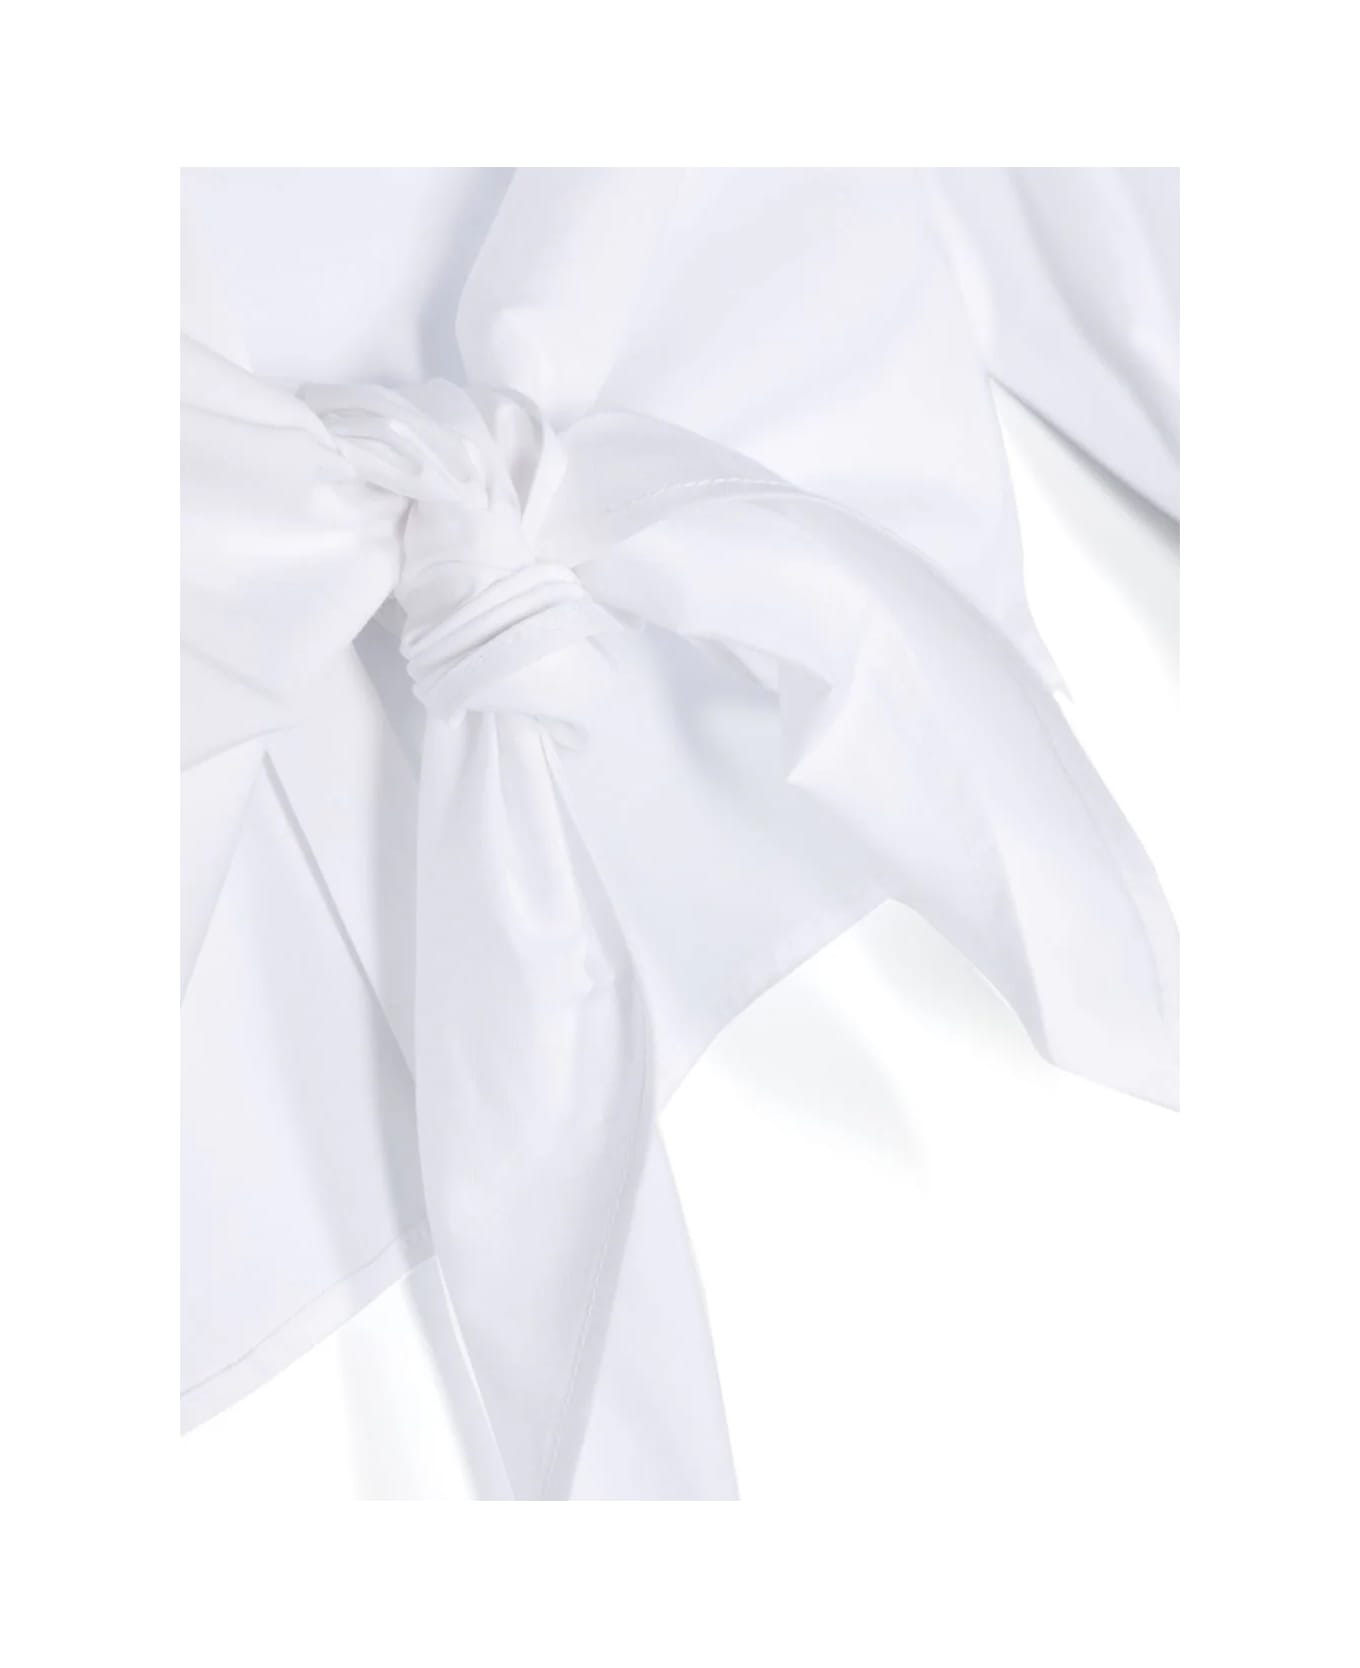 MSGM Camicia Con Ricamo - White シャツ